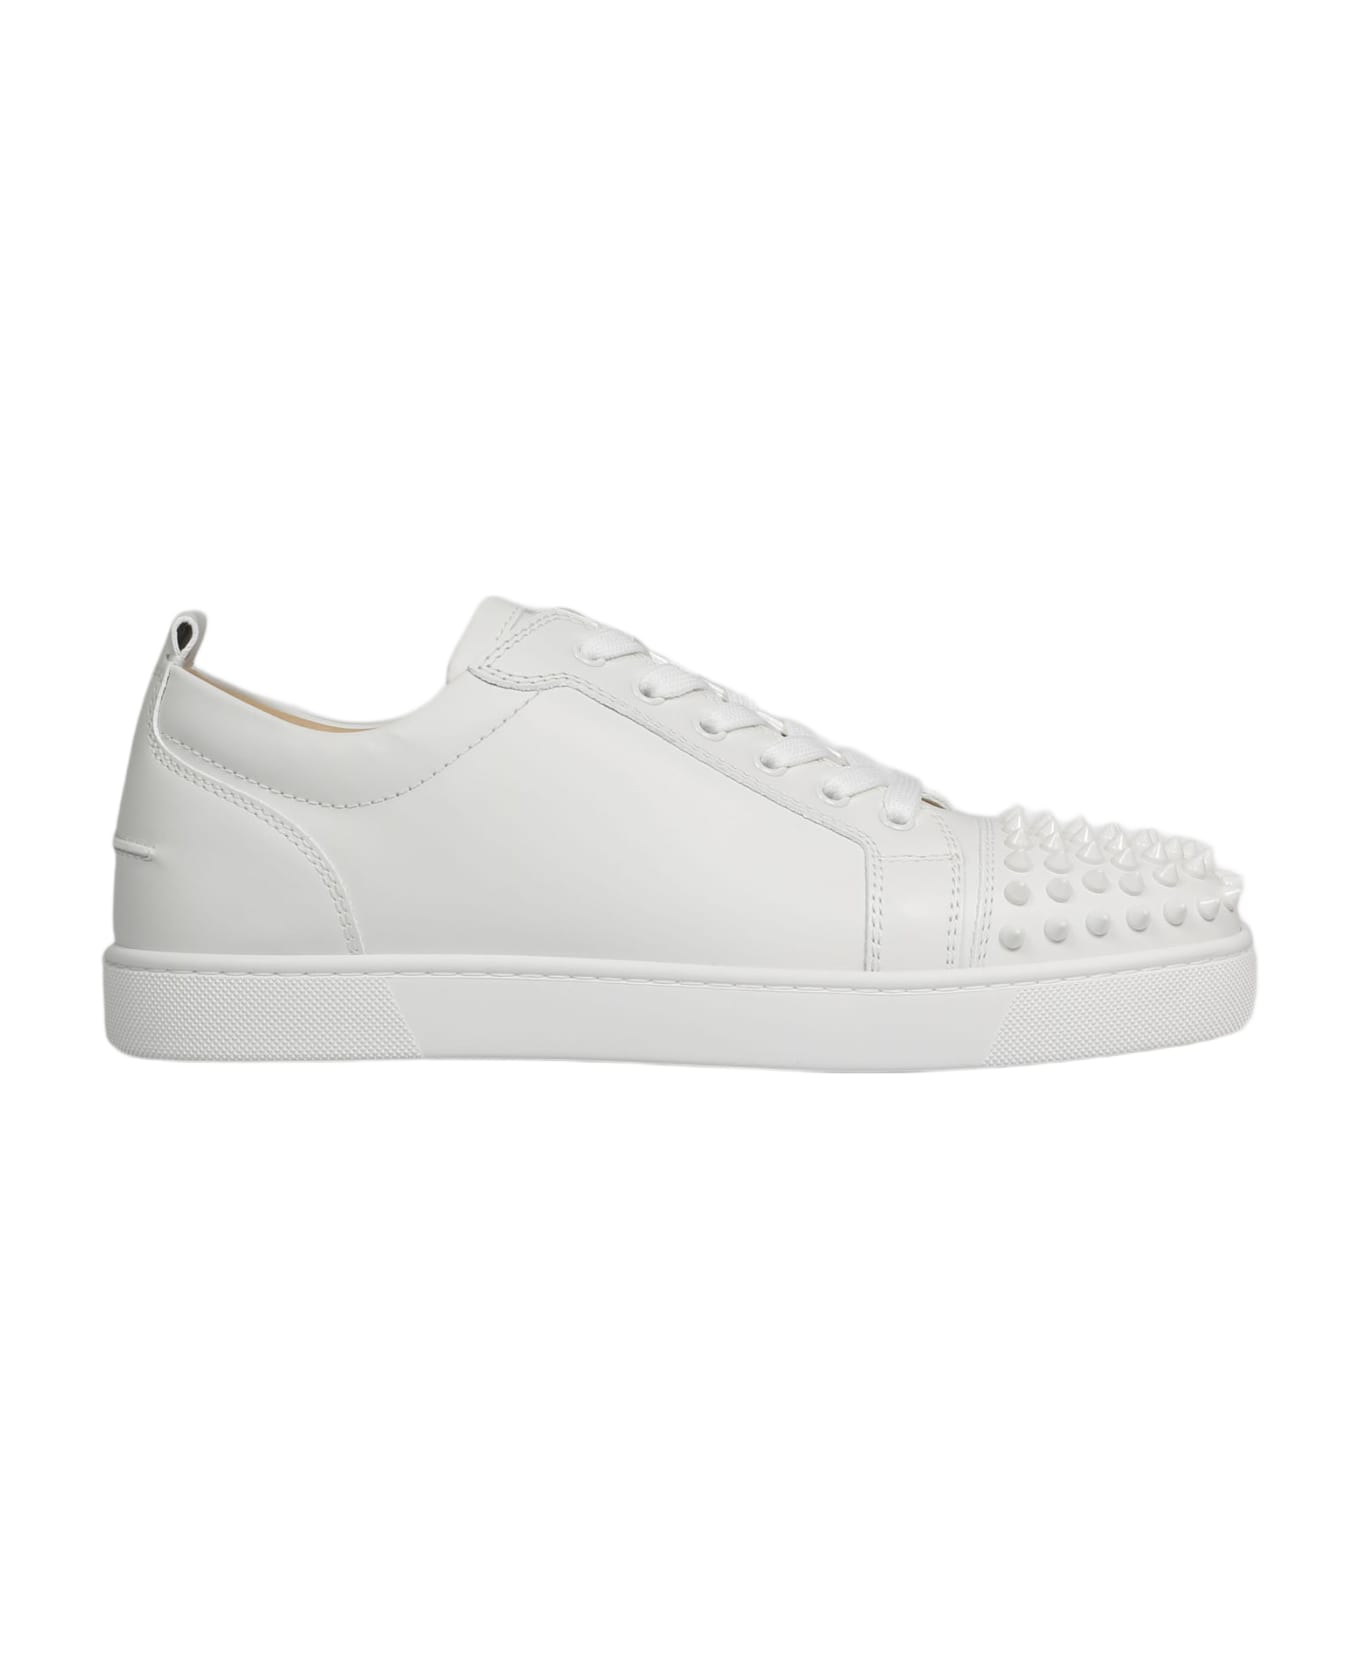 Christian Louboutin Louis Junior Sneakers - White